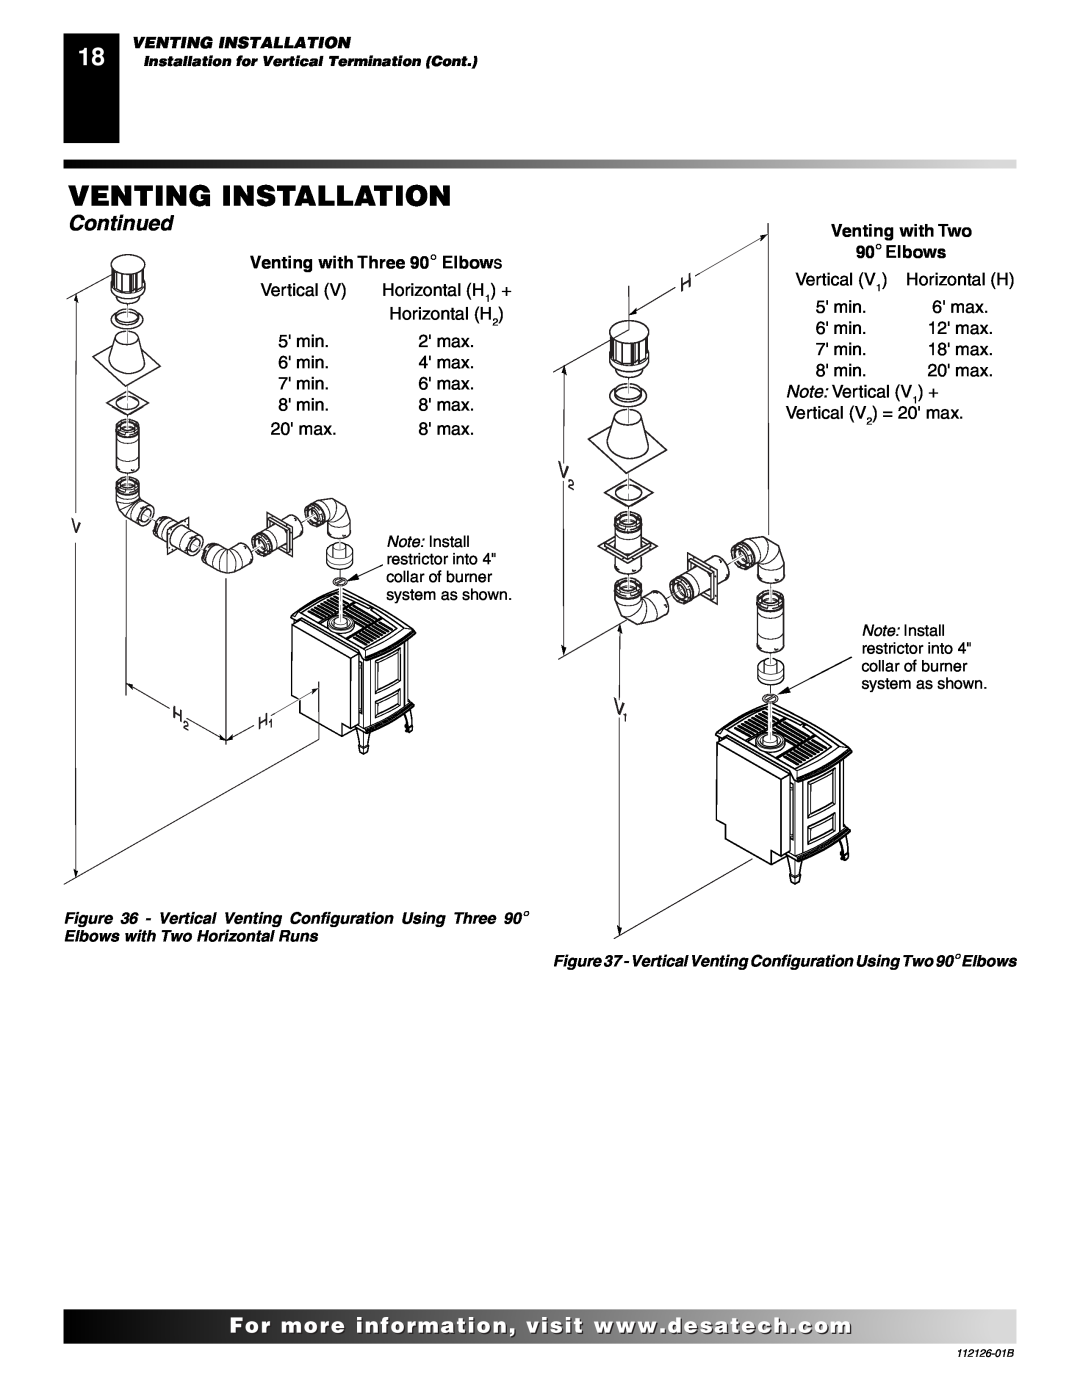 Desa SDVBND, SDVBPD installation manual Venting Installation, Continued, Vertical 